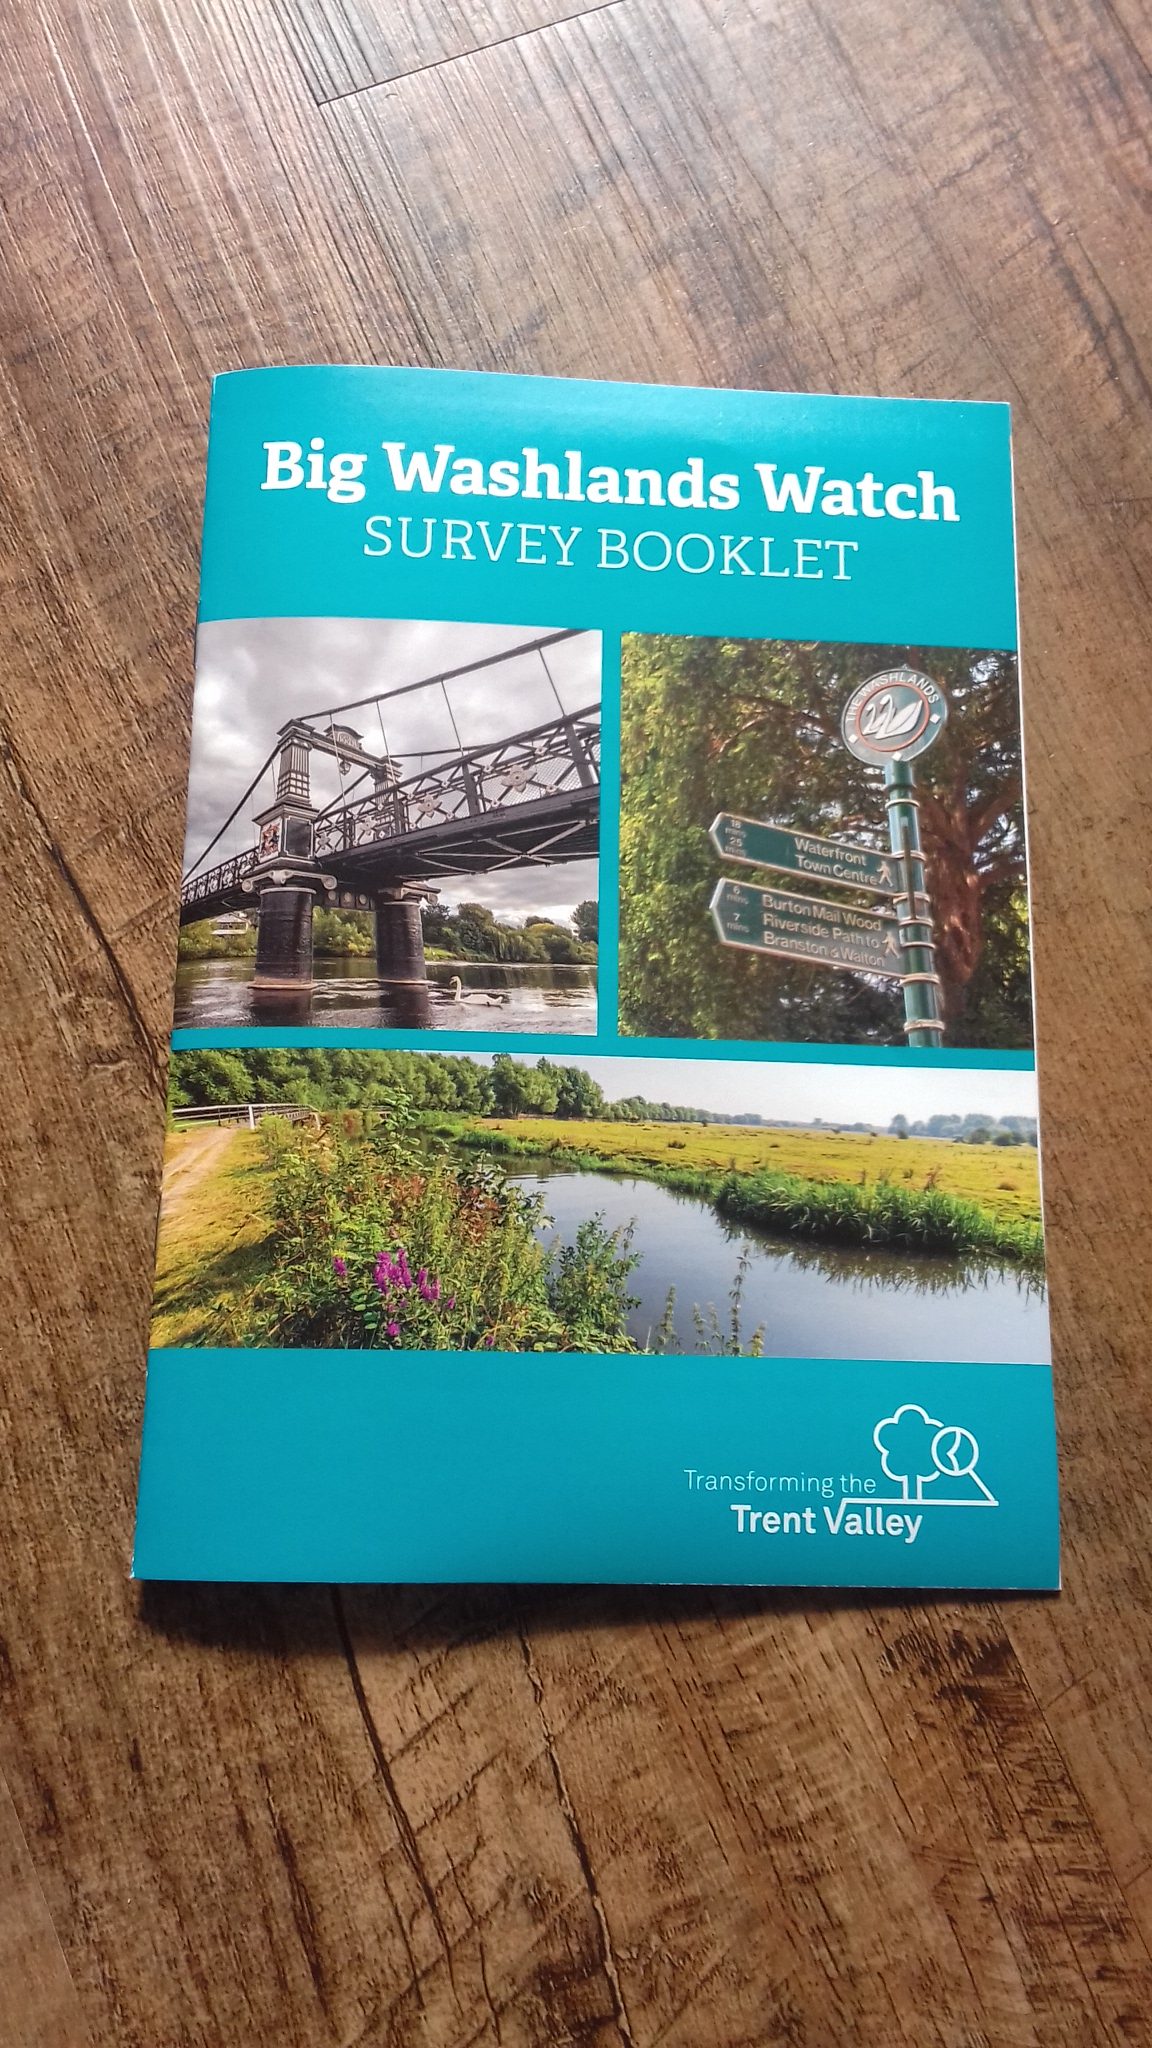 A blue booklet, titled 'Big Washlands Watch Survey Booklet'